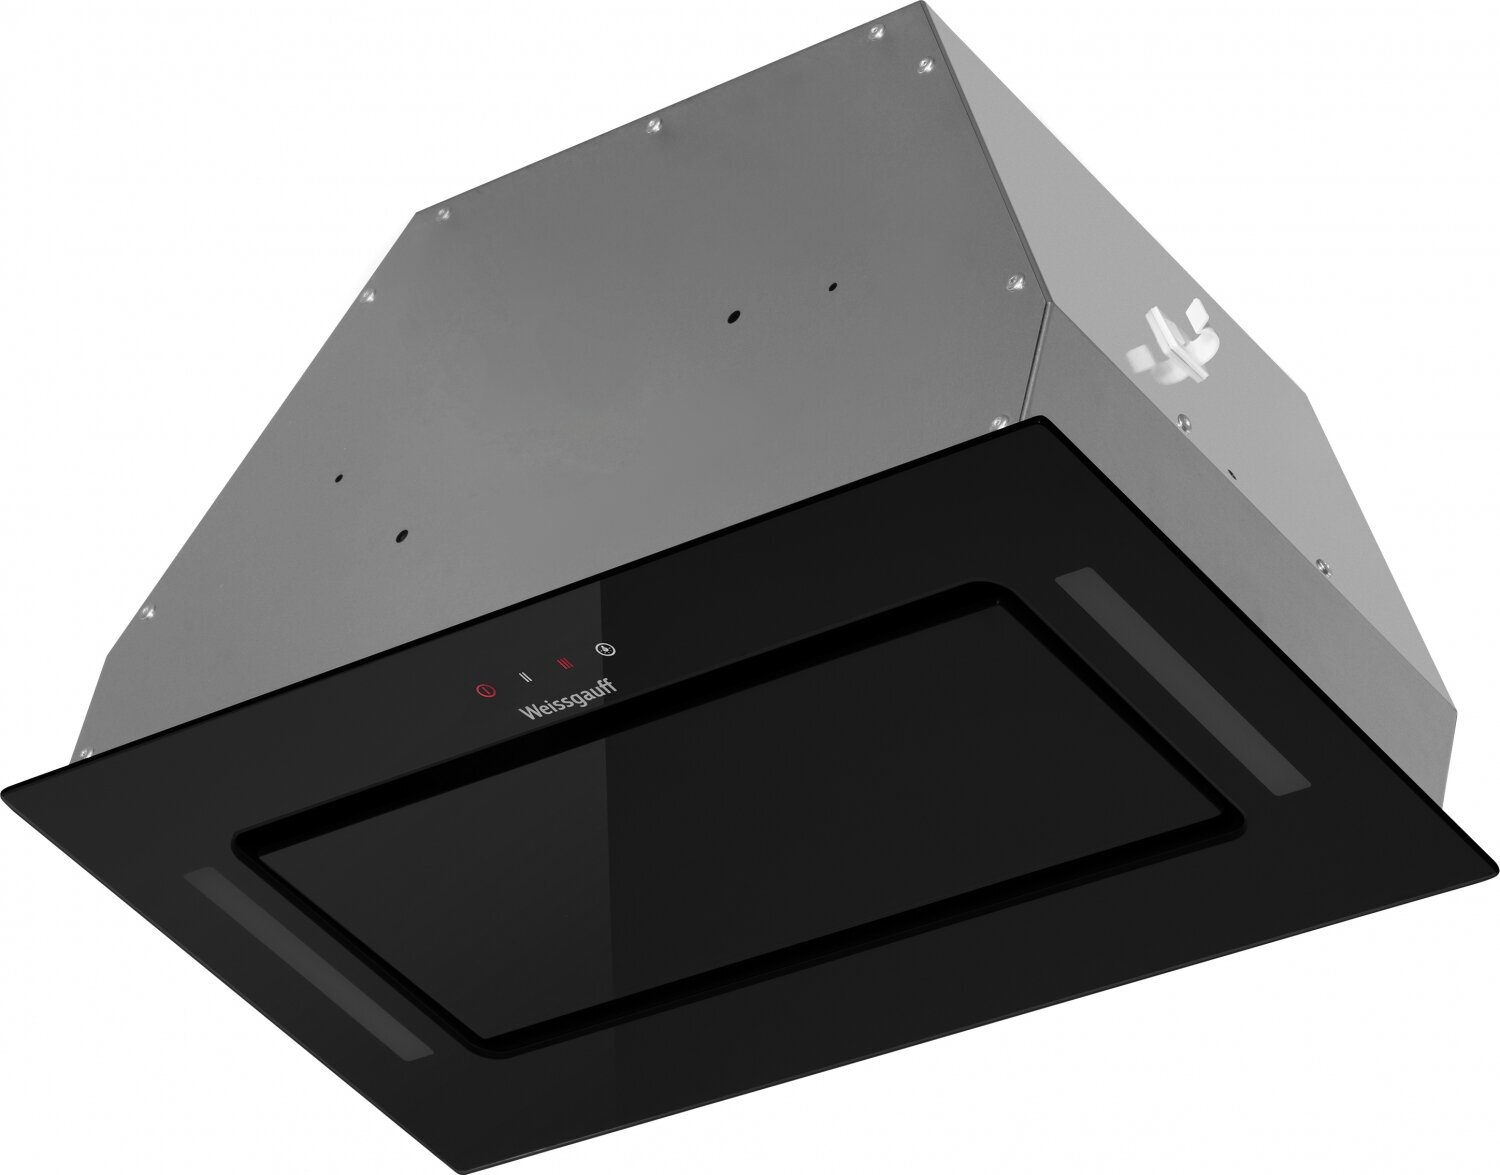 Кухонная встраиваемая вытяжка Weissgauff Veil 600 Touch Black Glass 3 года гарантии, Алюминиевый жировой фильтр, Низкий уровень шума